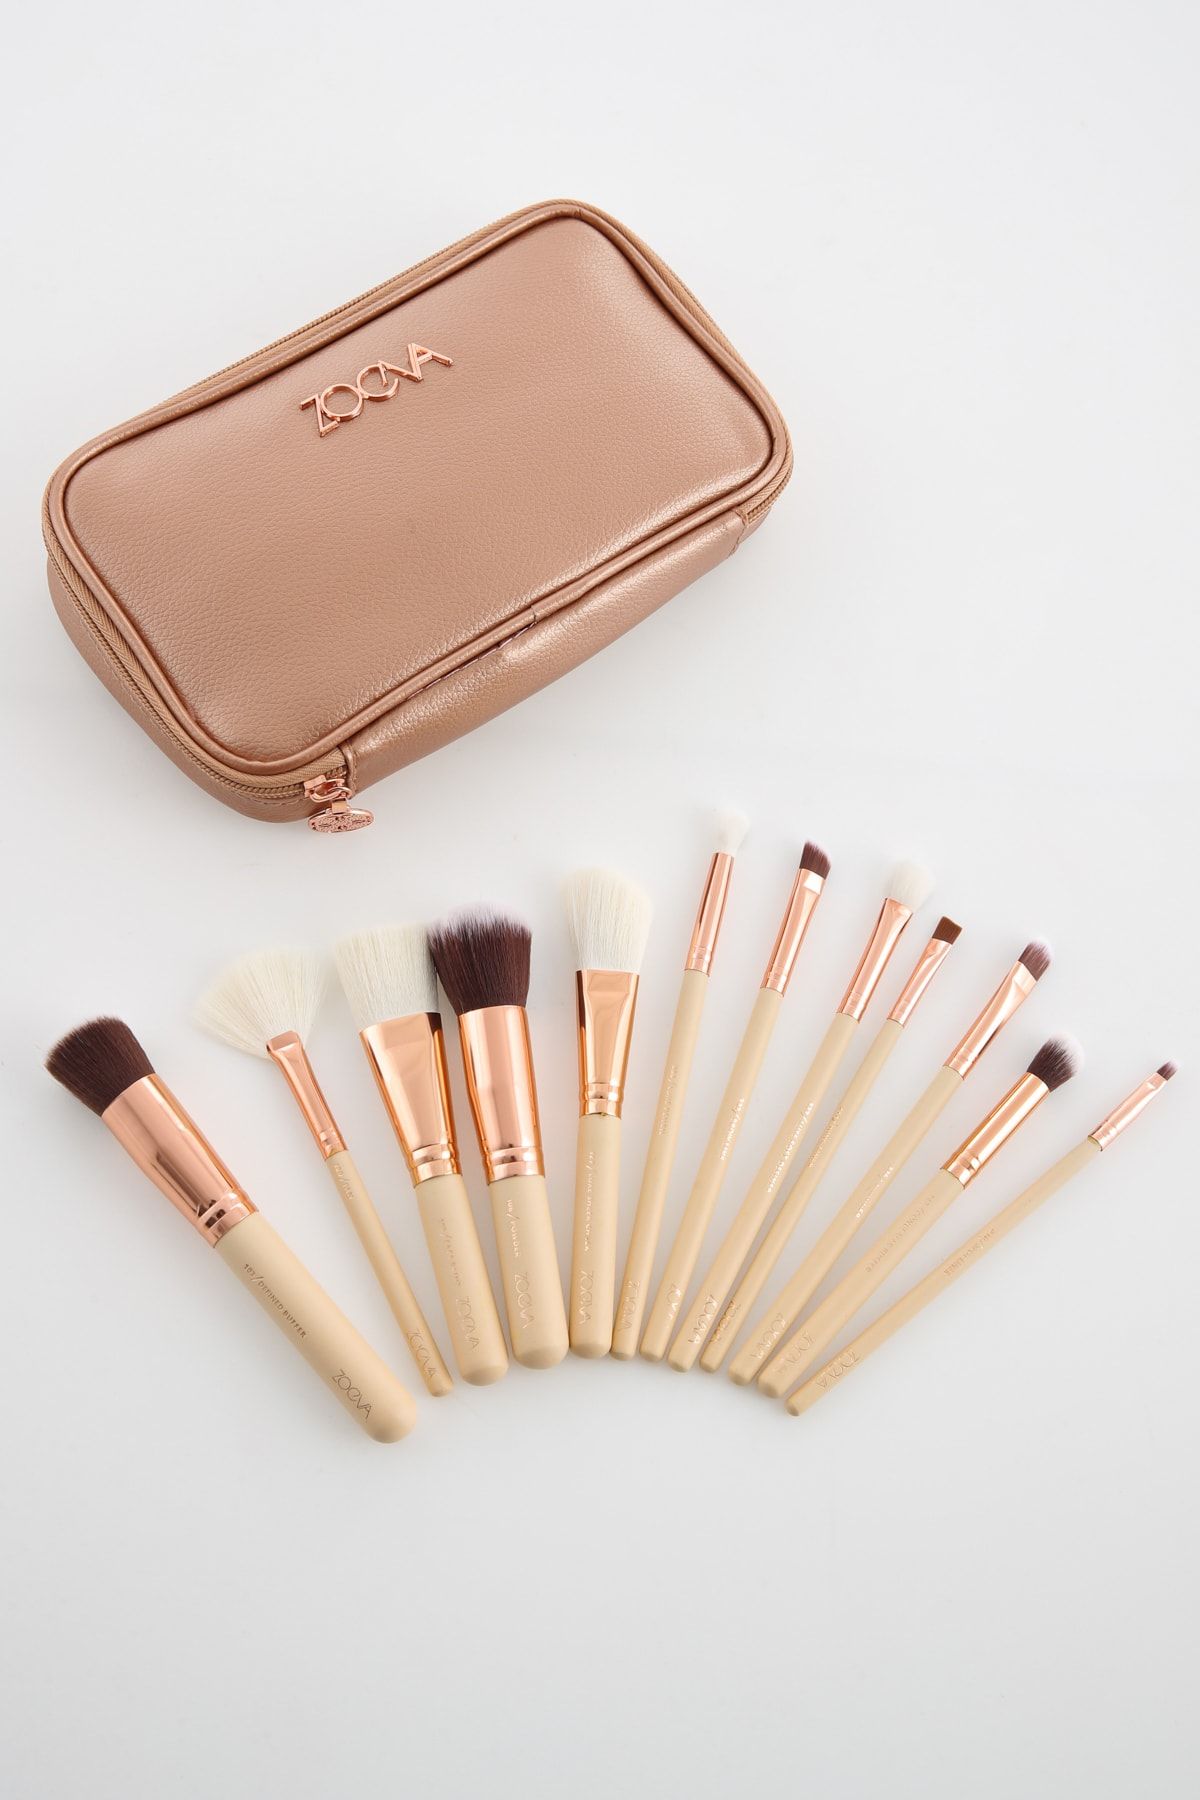 Bh Cosmetics X Zoeva 12 Pcs Brush Set & Bag - 12'li Fırça Seti & Çanta  Zoeva Rose Gold Fiyatı, Yorumları - Trendyol